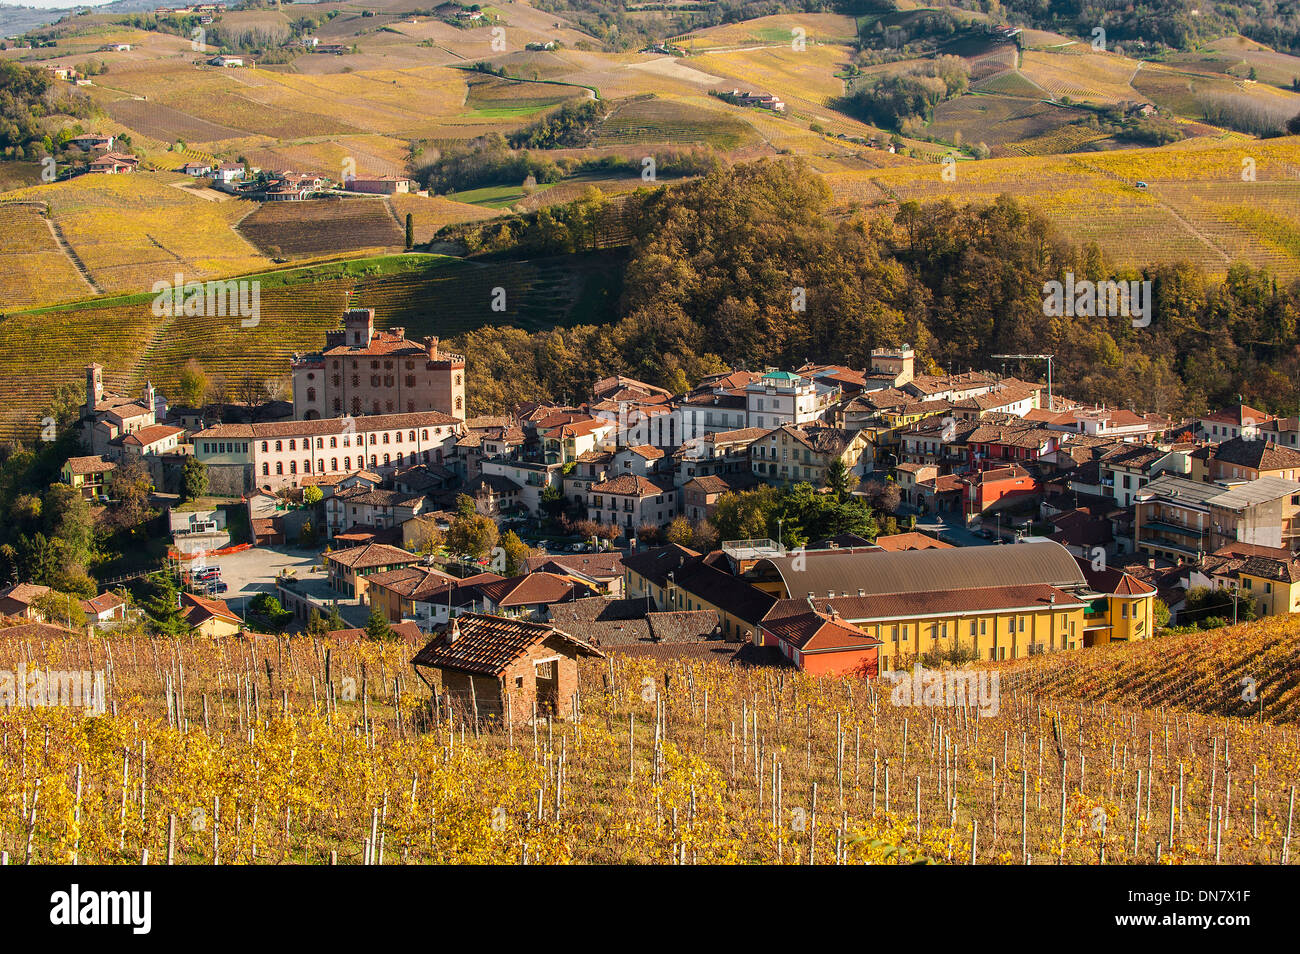 Europa Italia Piemonte langhe Barolo il villaggio Foto Stock